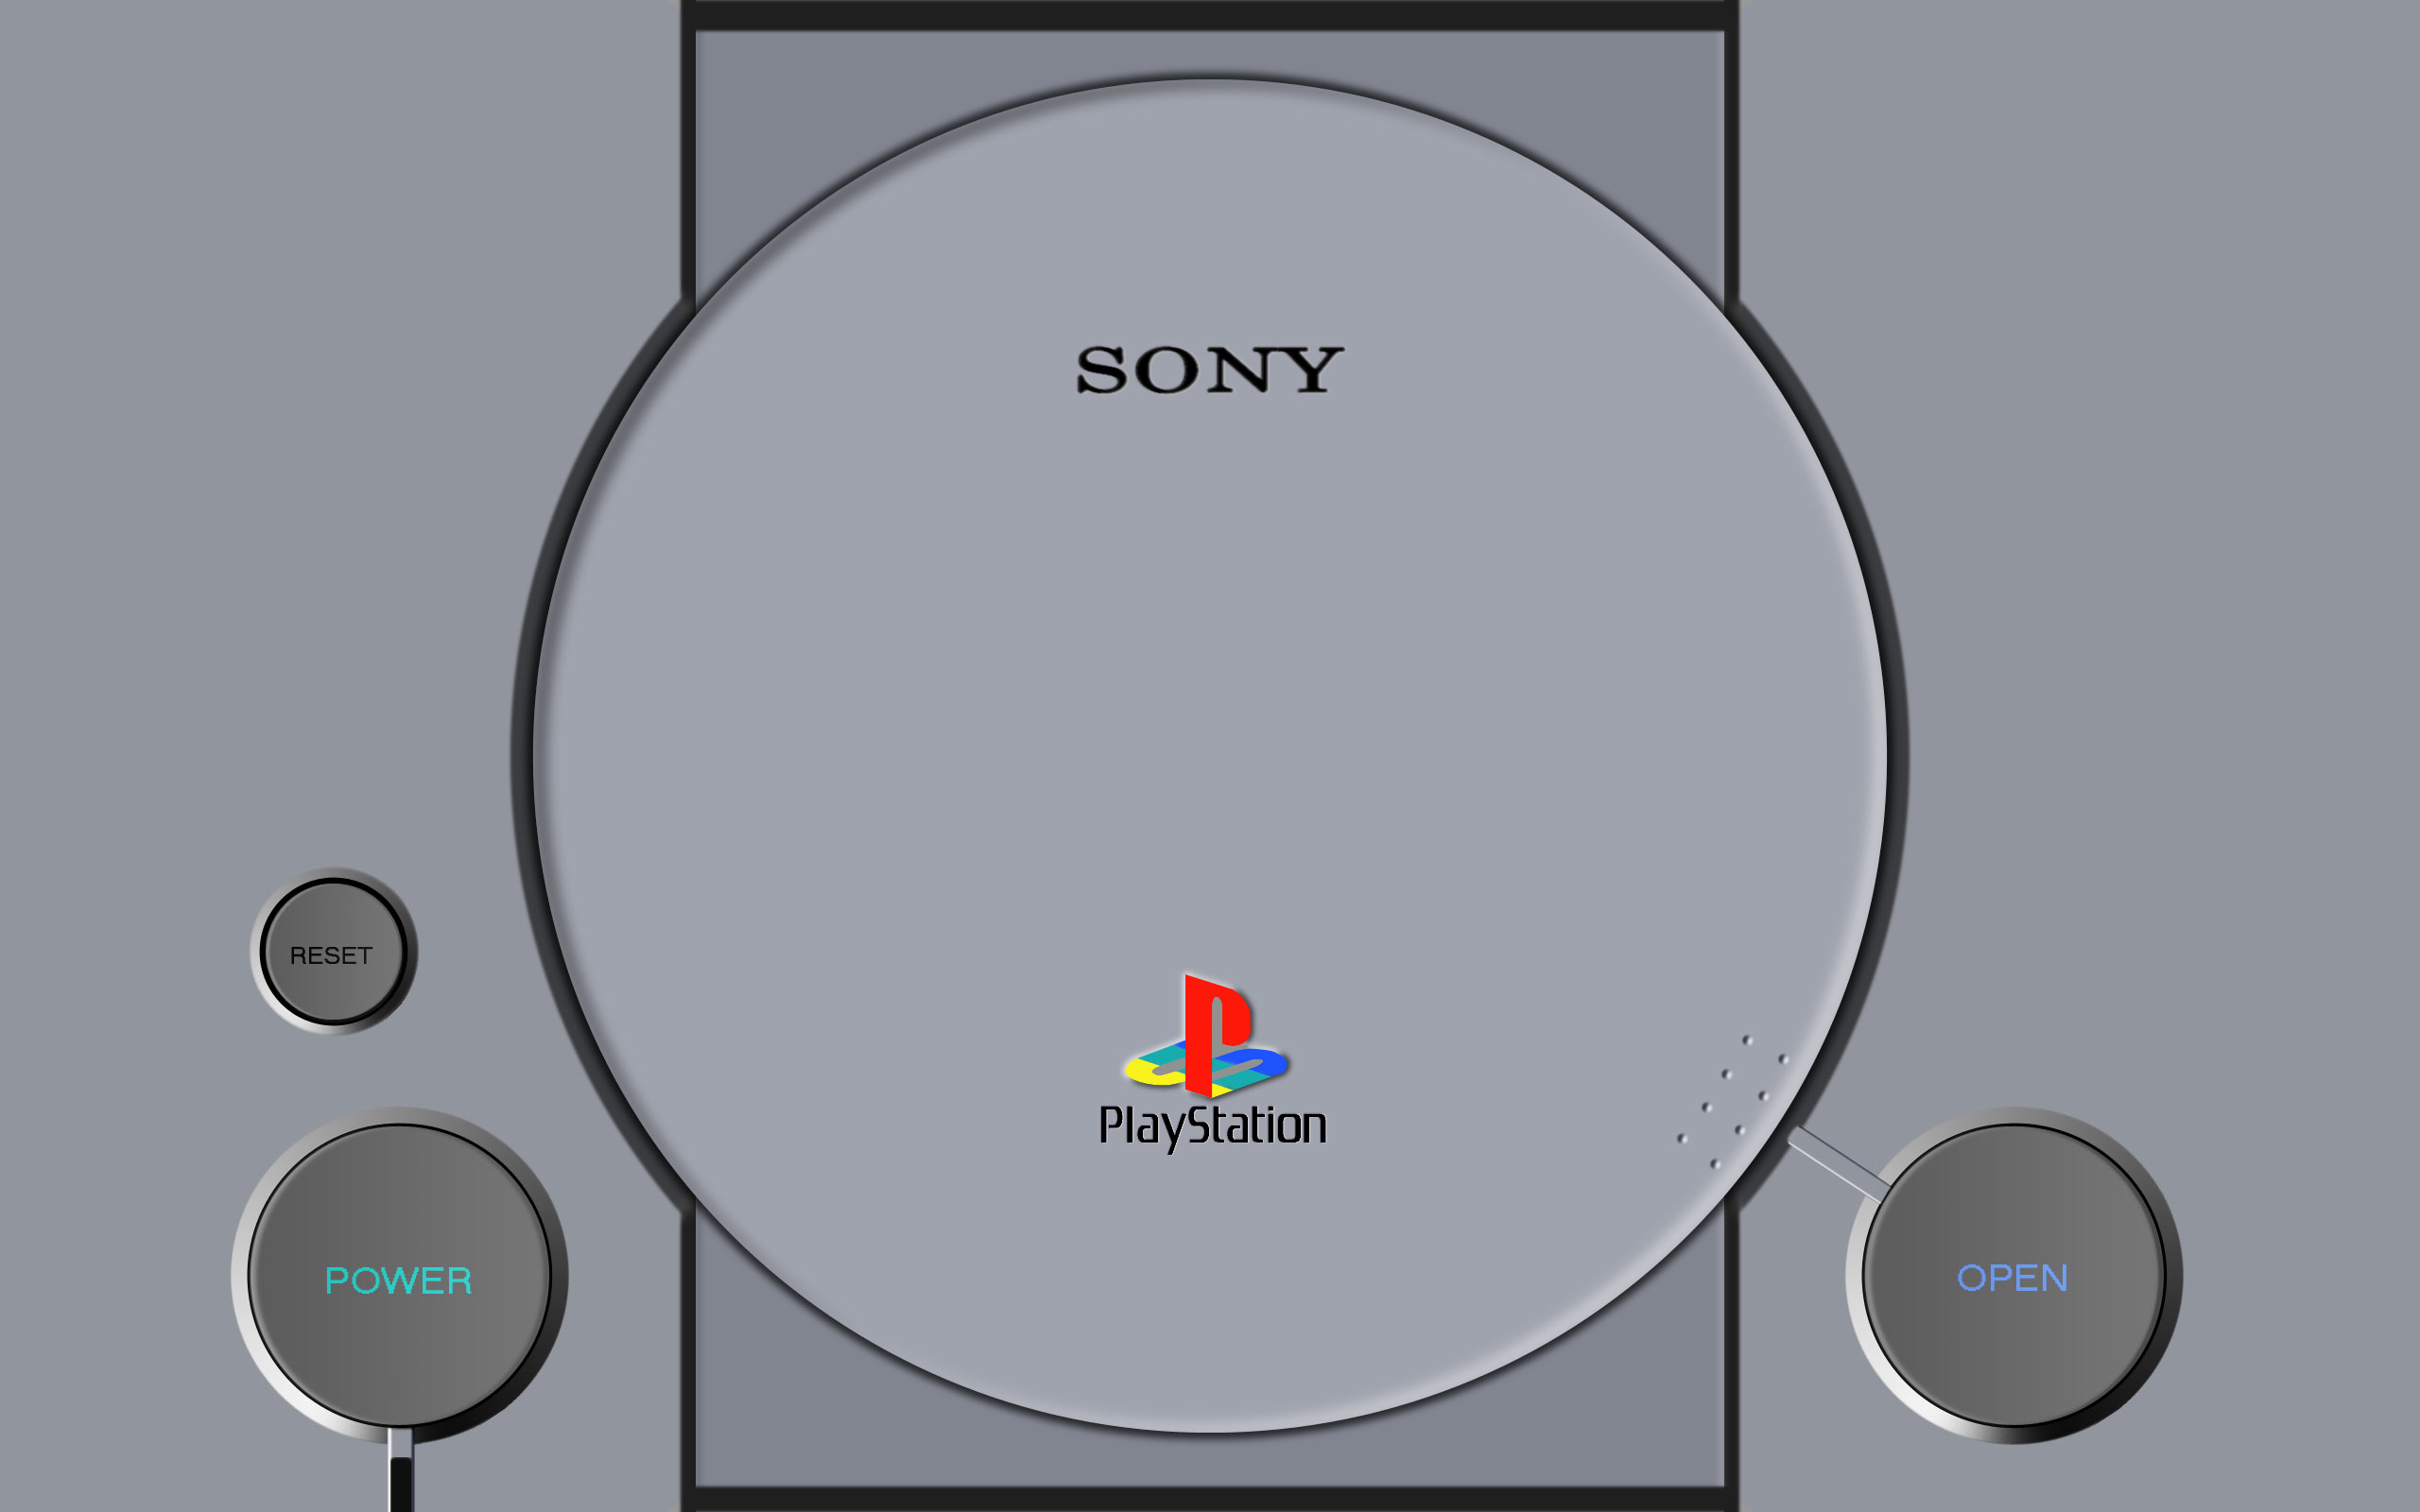 Sony Playstation wallpaper